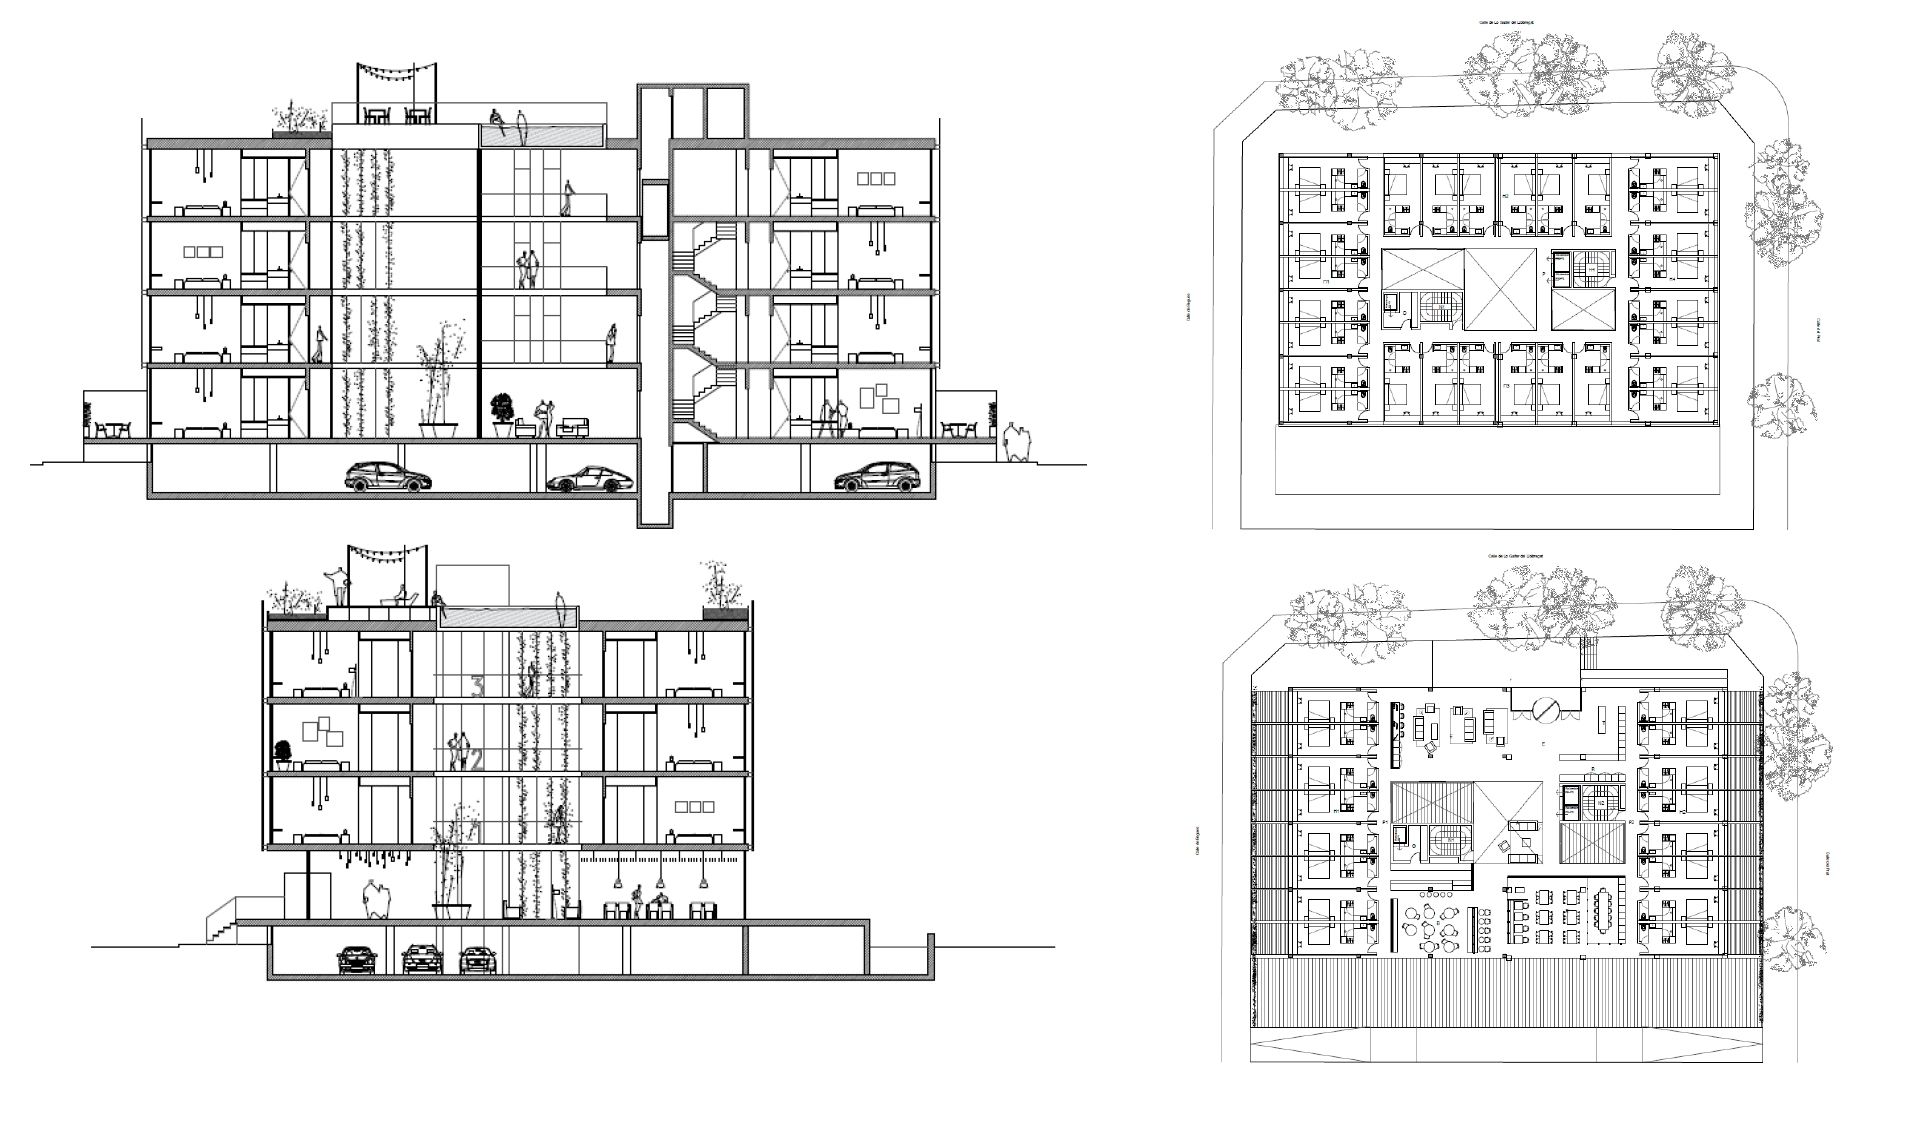 Sercotel explotará un nuevo hotel de 100 habitaciones cerca del aeropuerto de El Prat de cara a 2023